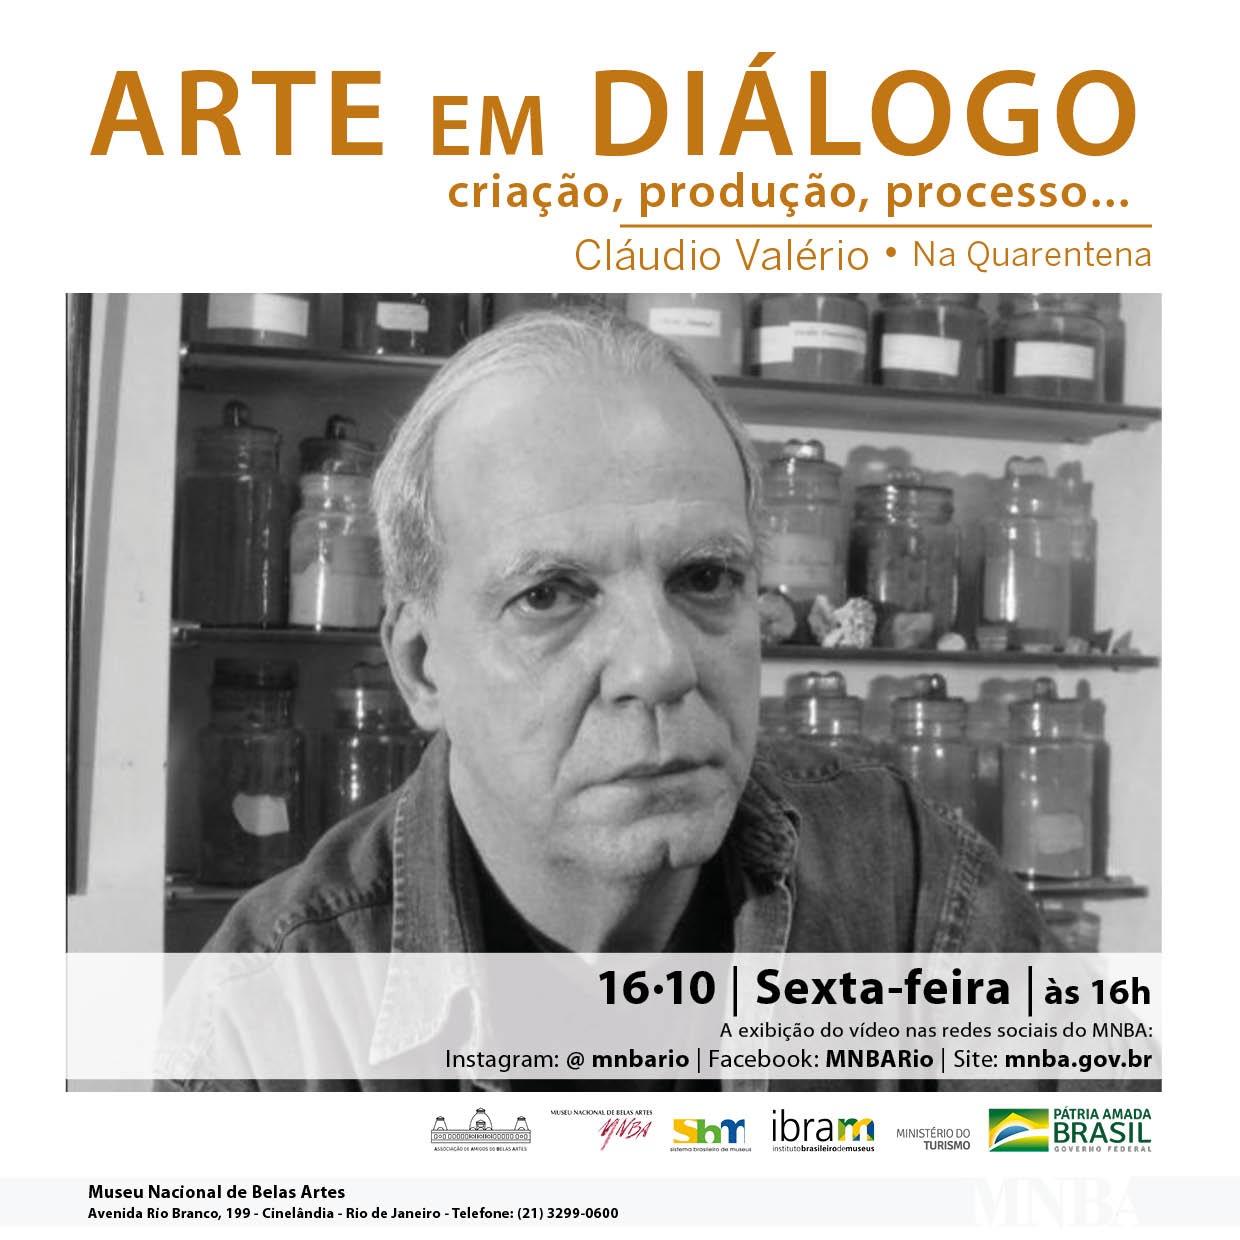 Projeto Arte em Diálogo, na Quarentena, com Cláudio Valério, flyer. Divulgação.